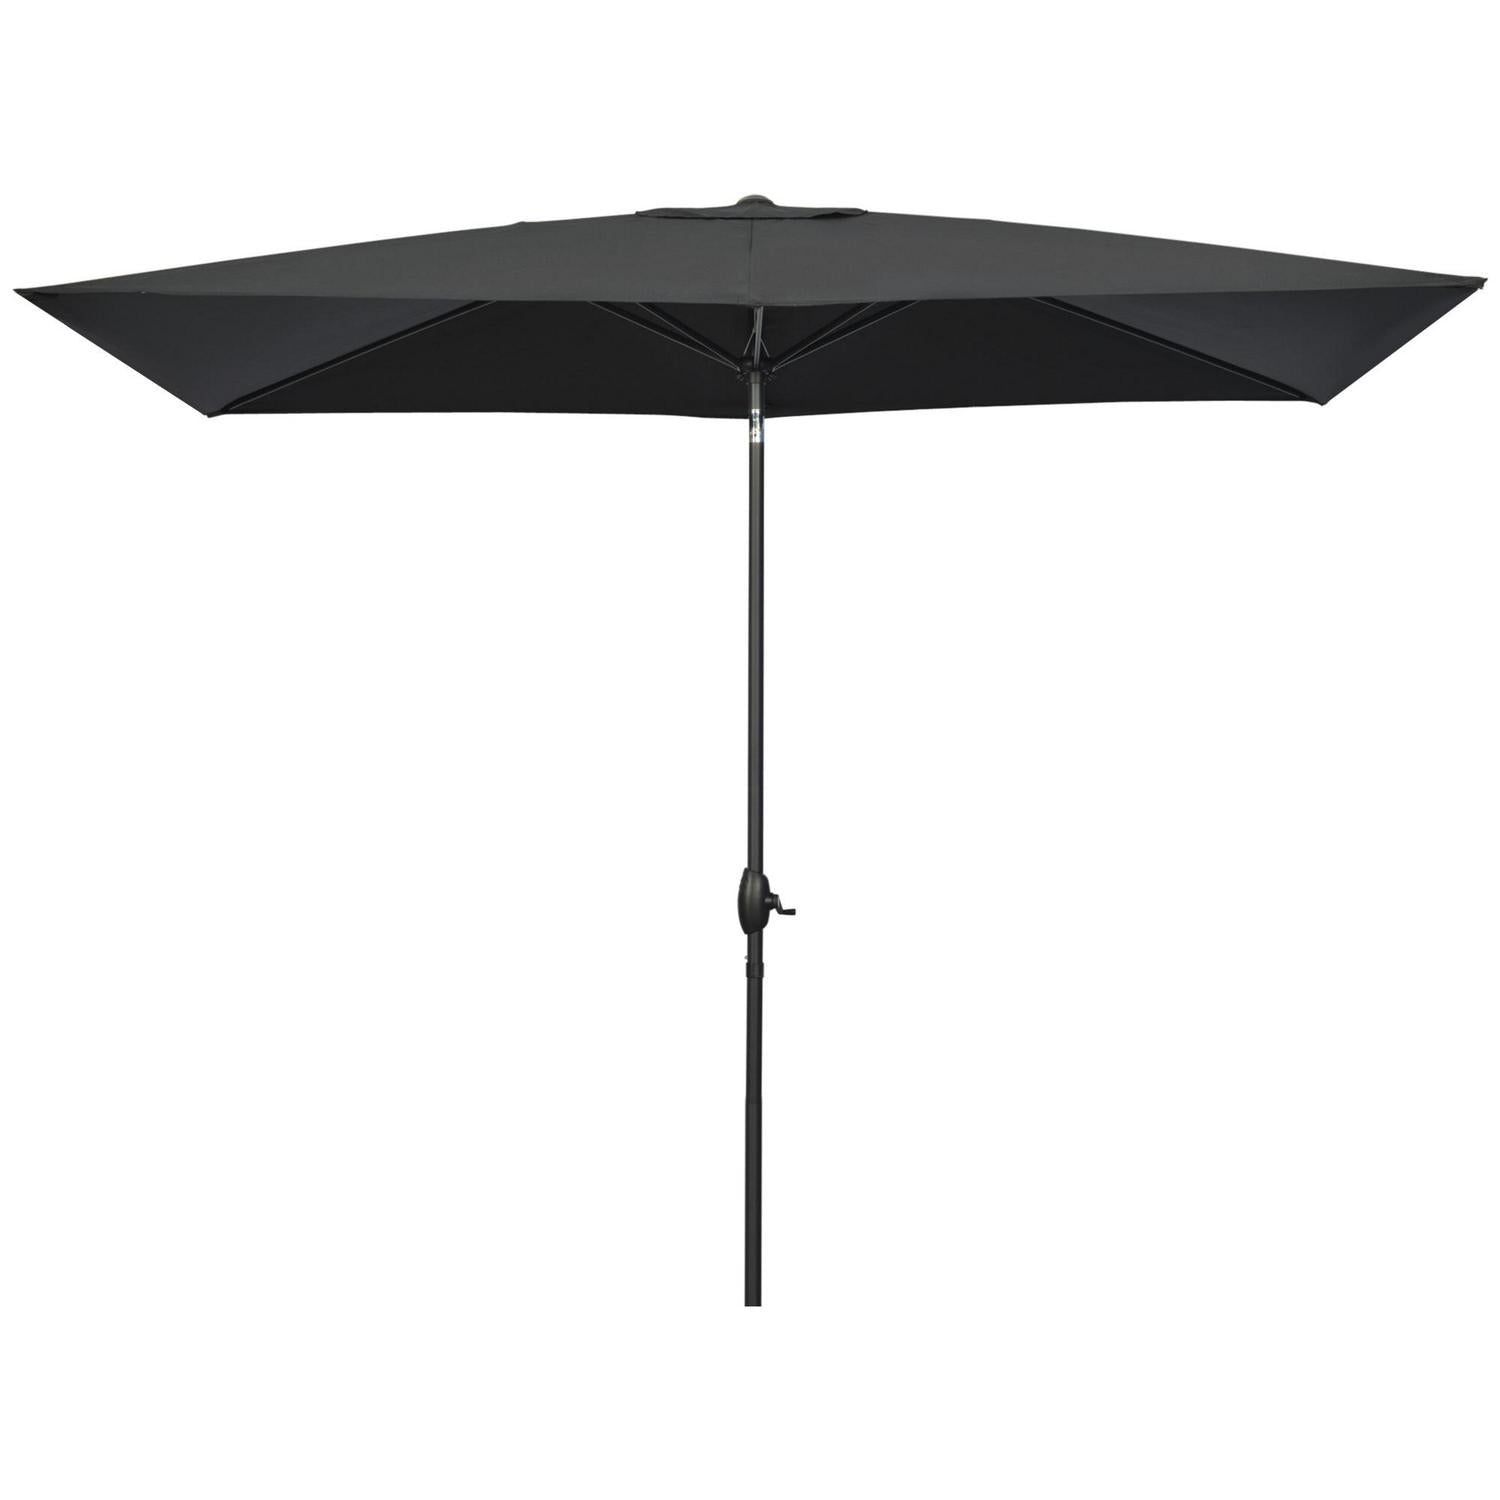 Garden Parasols Umbrellas Rectangular Patio Market Outdoor Shade- Black